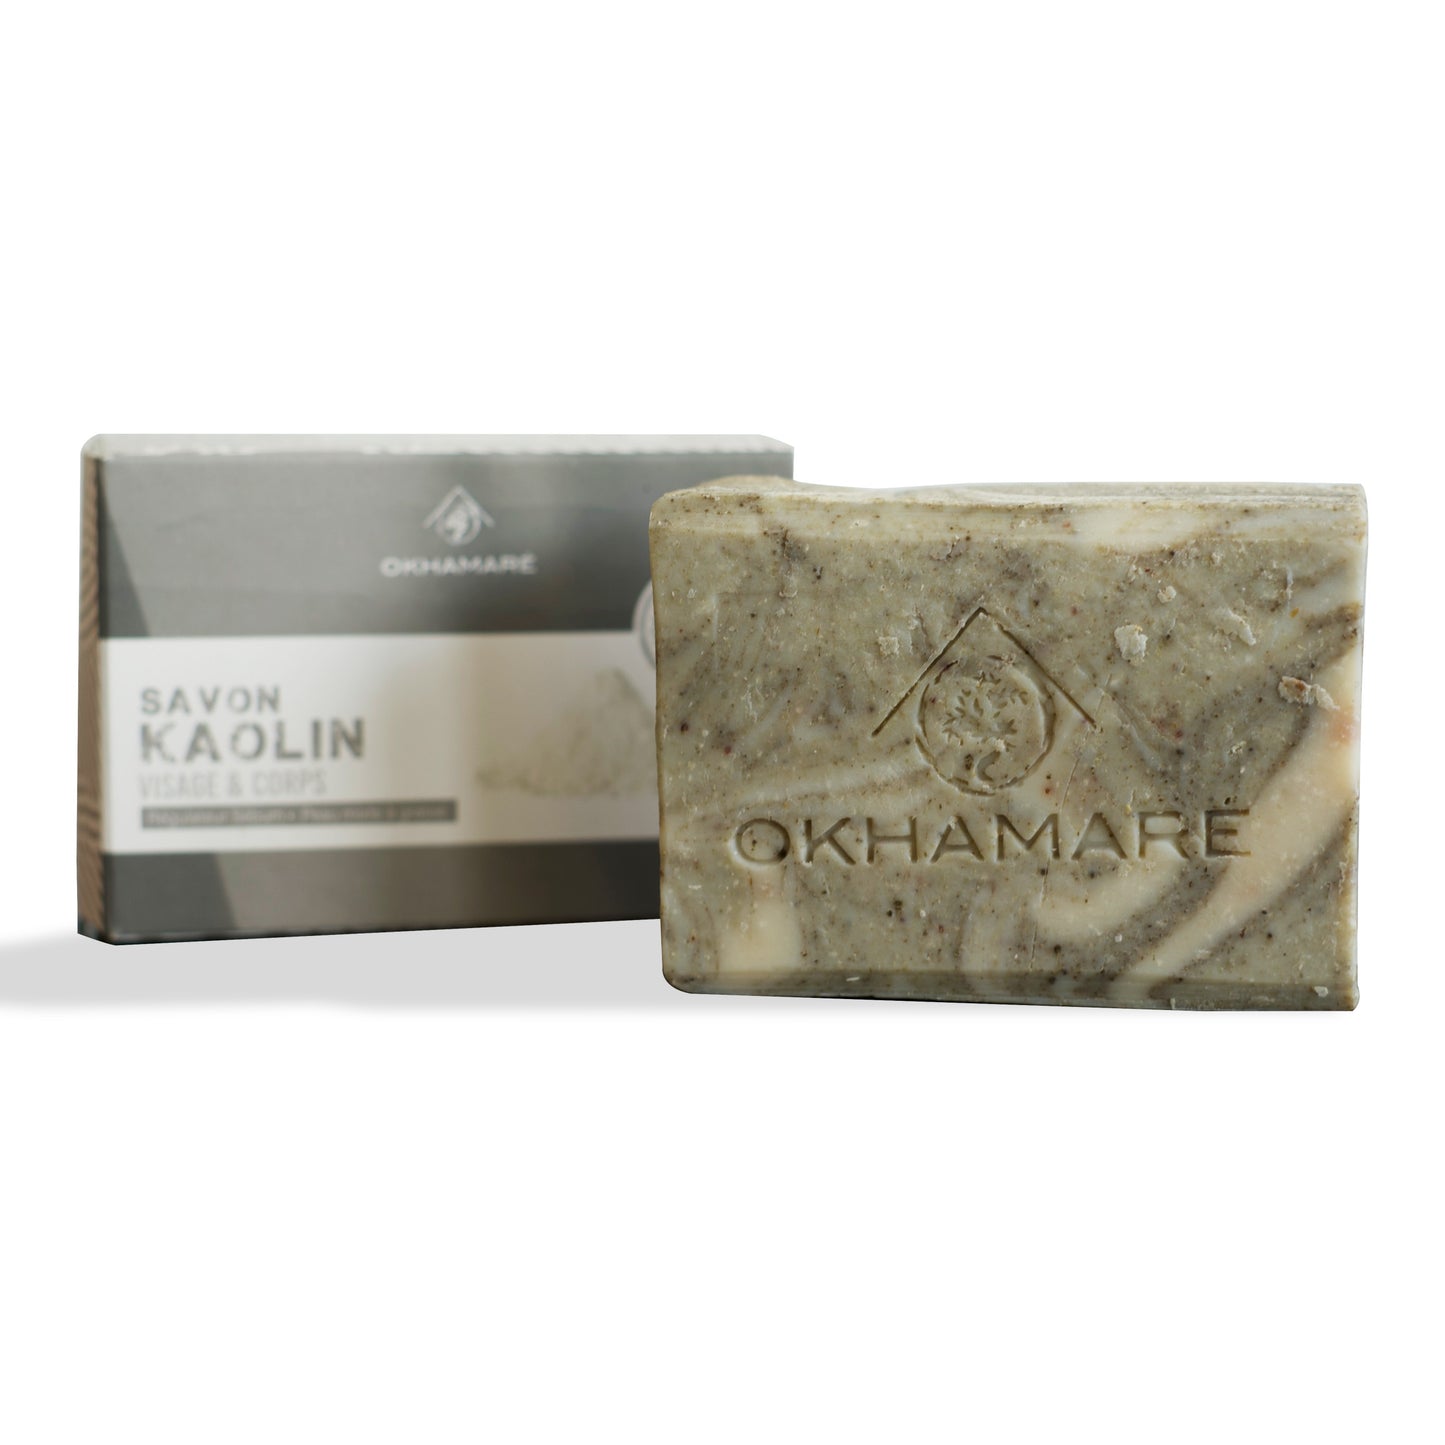 Kaolin soap